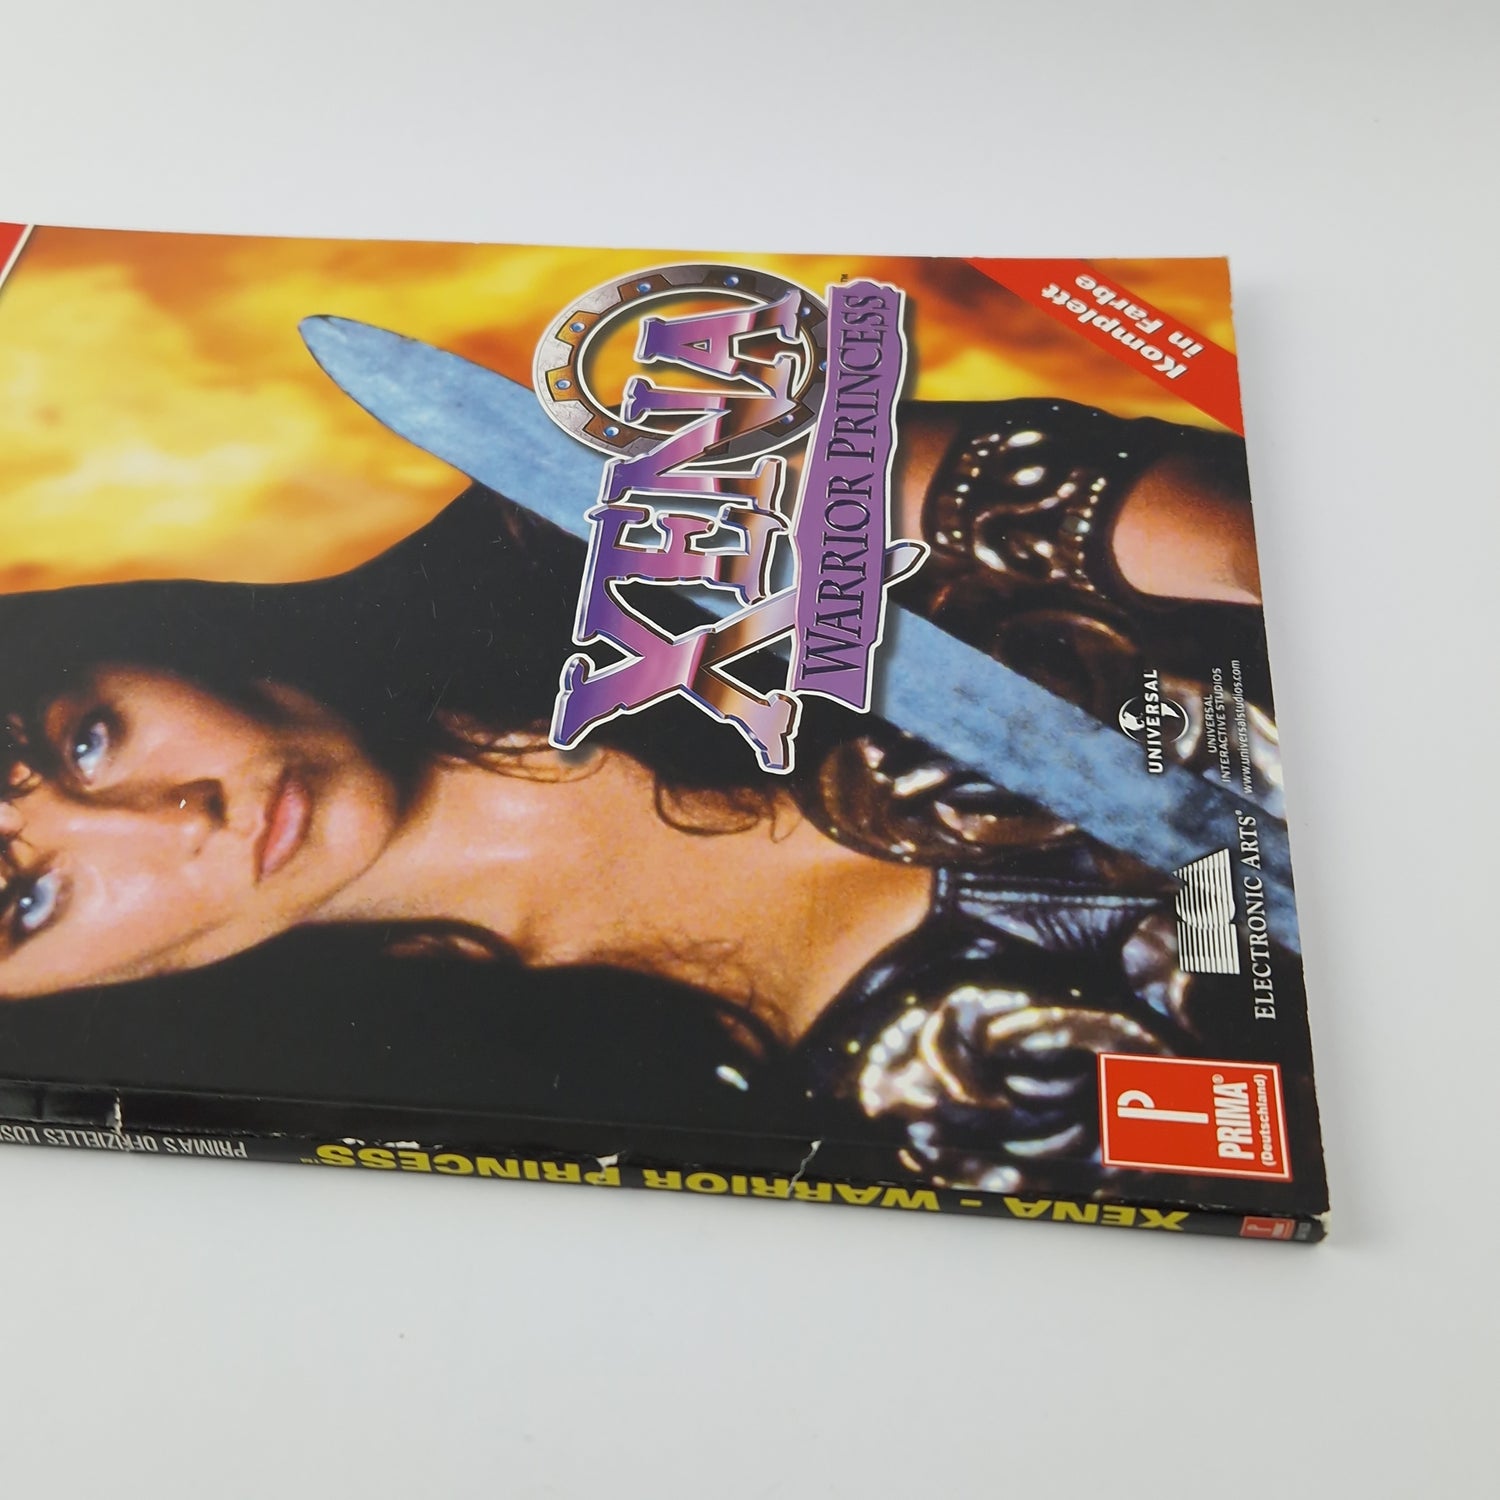 Primas Lösungsbuch zu dem Spiel : XENA Warrior Princess - Spieleberater N64